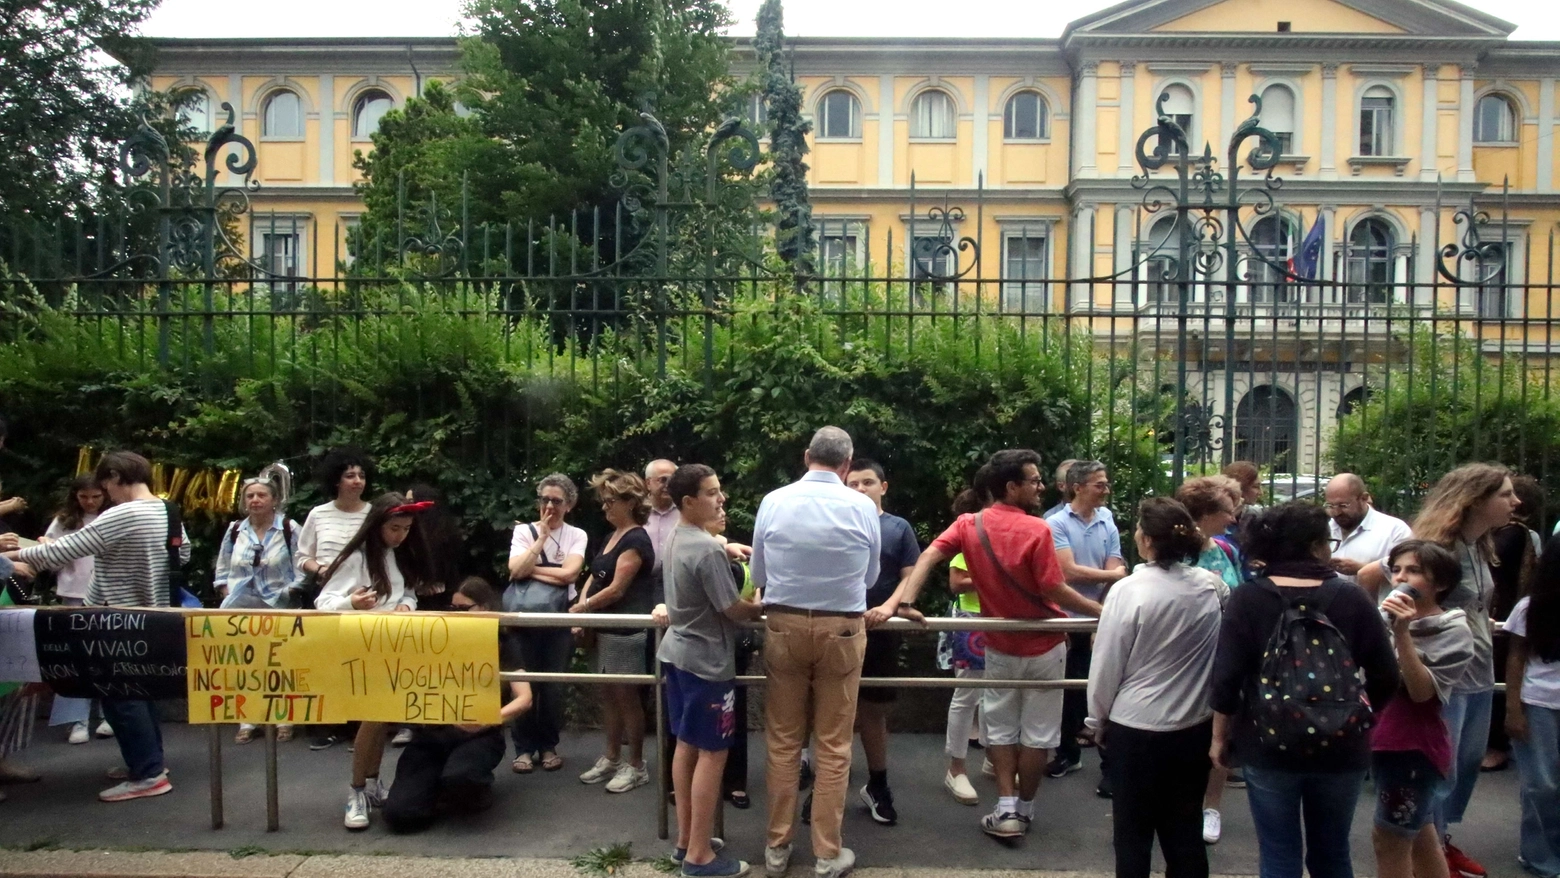 Milano, dopo il trasloco della media statale a indirizzo musicale in viale D’Annunzio, nello storico palazzo arrivano nuovi studenti